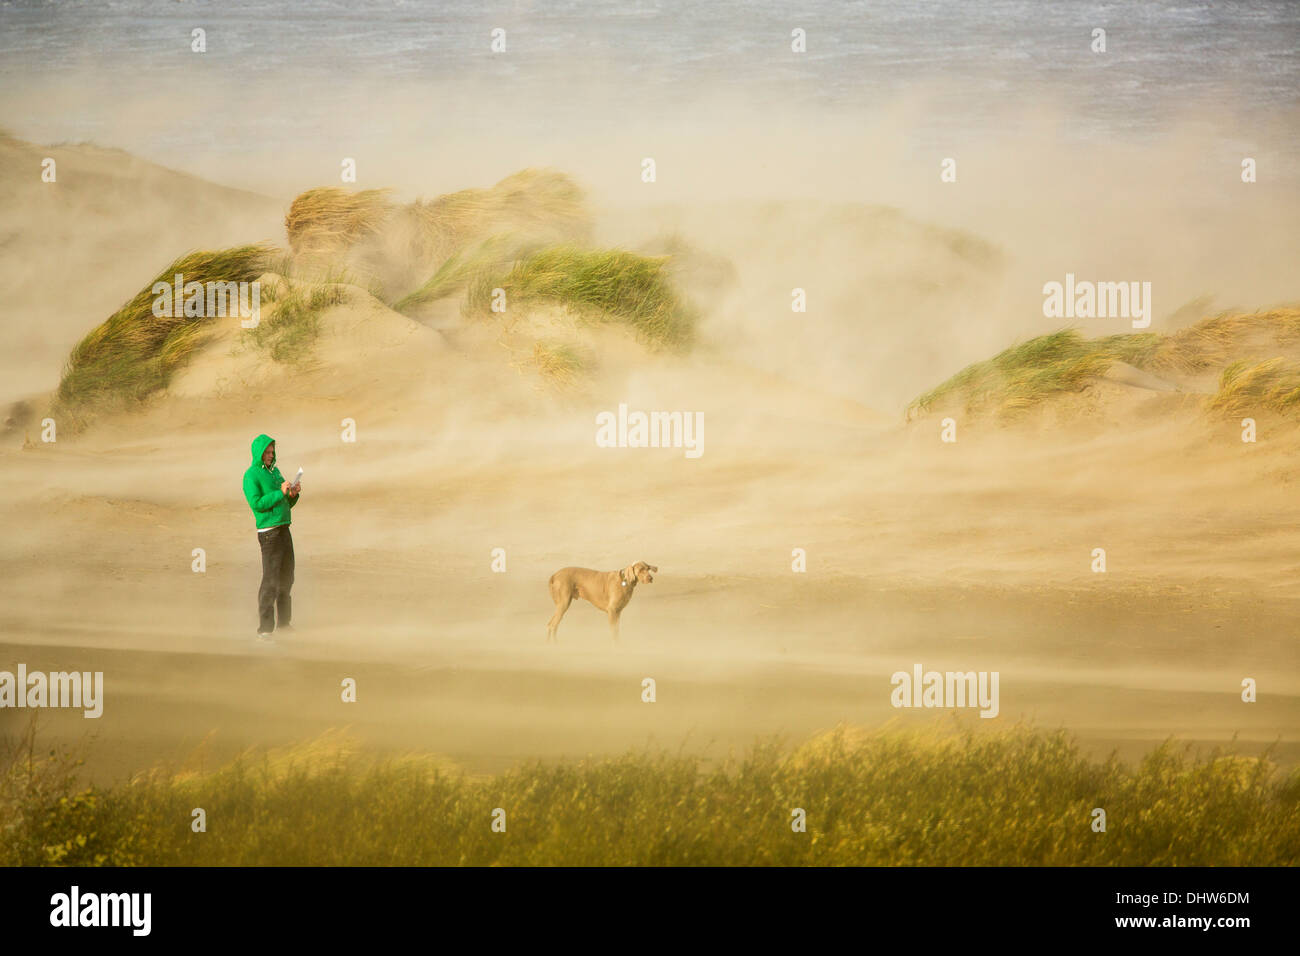 Holland, IJmuiden, StoL auf Nordsee. Mensch und Hund in starkem Wind und Sand weht. Mann macht Bild mit smartphone Stockfoto